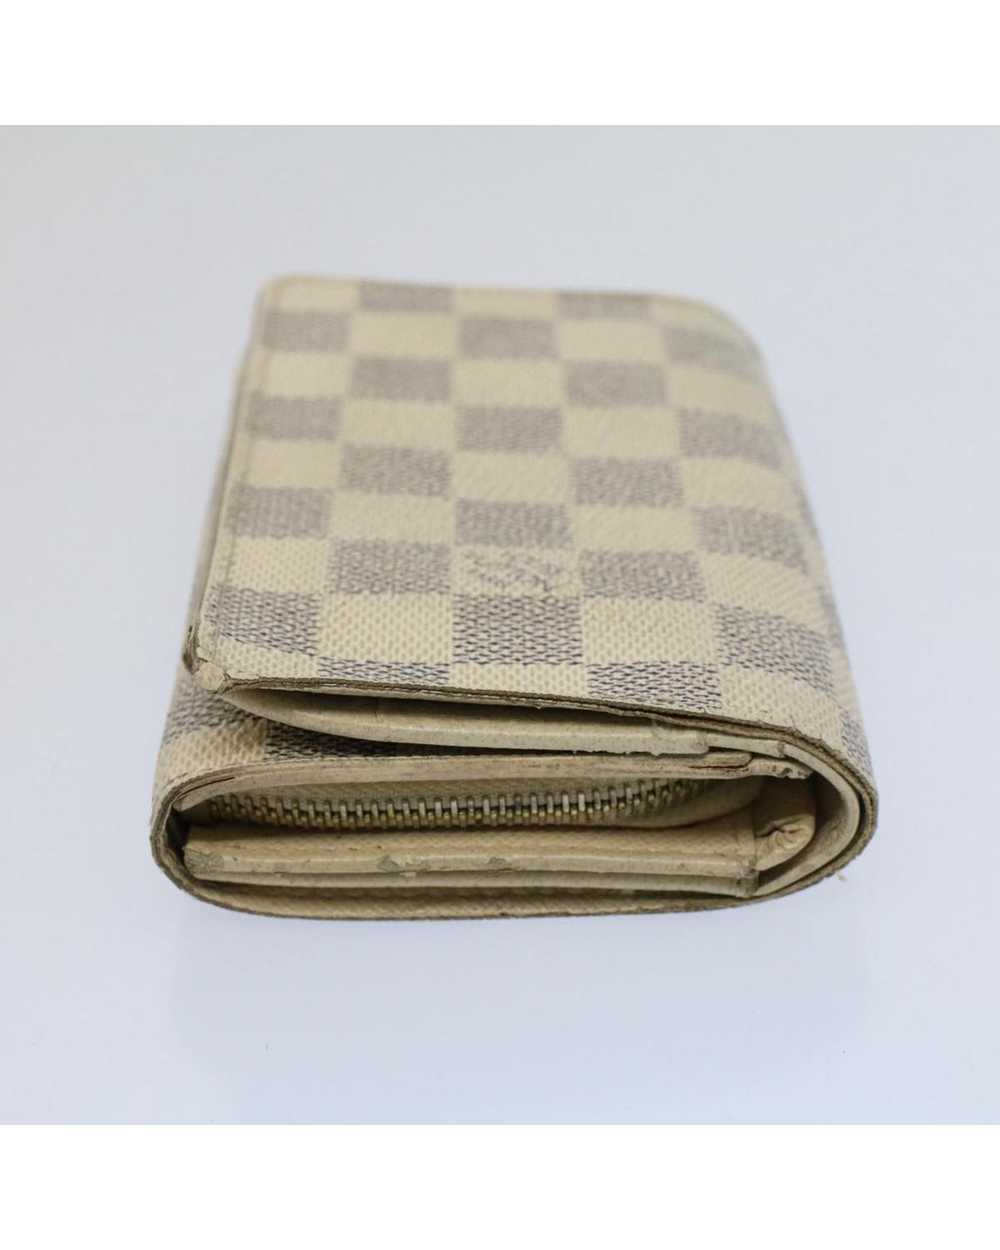 Louis Vuitton Damier Azur Wallet with Clasp Button - image 4